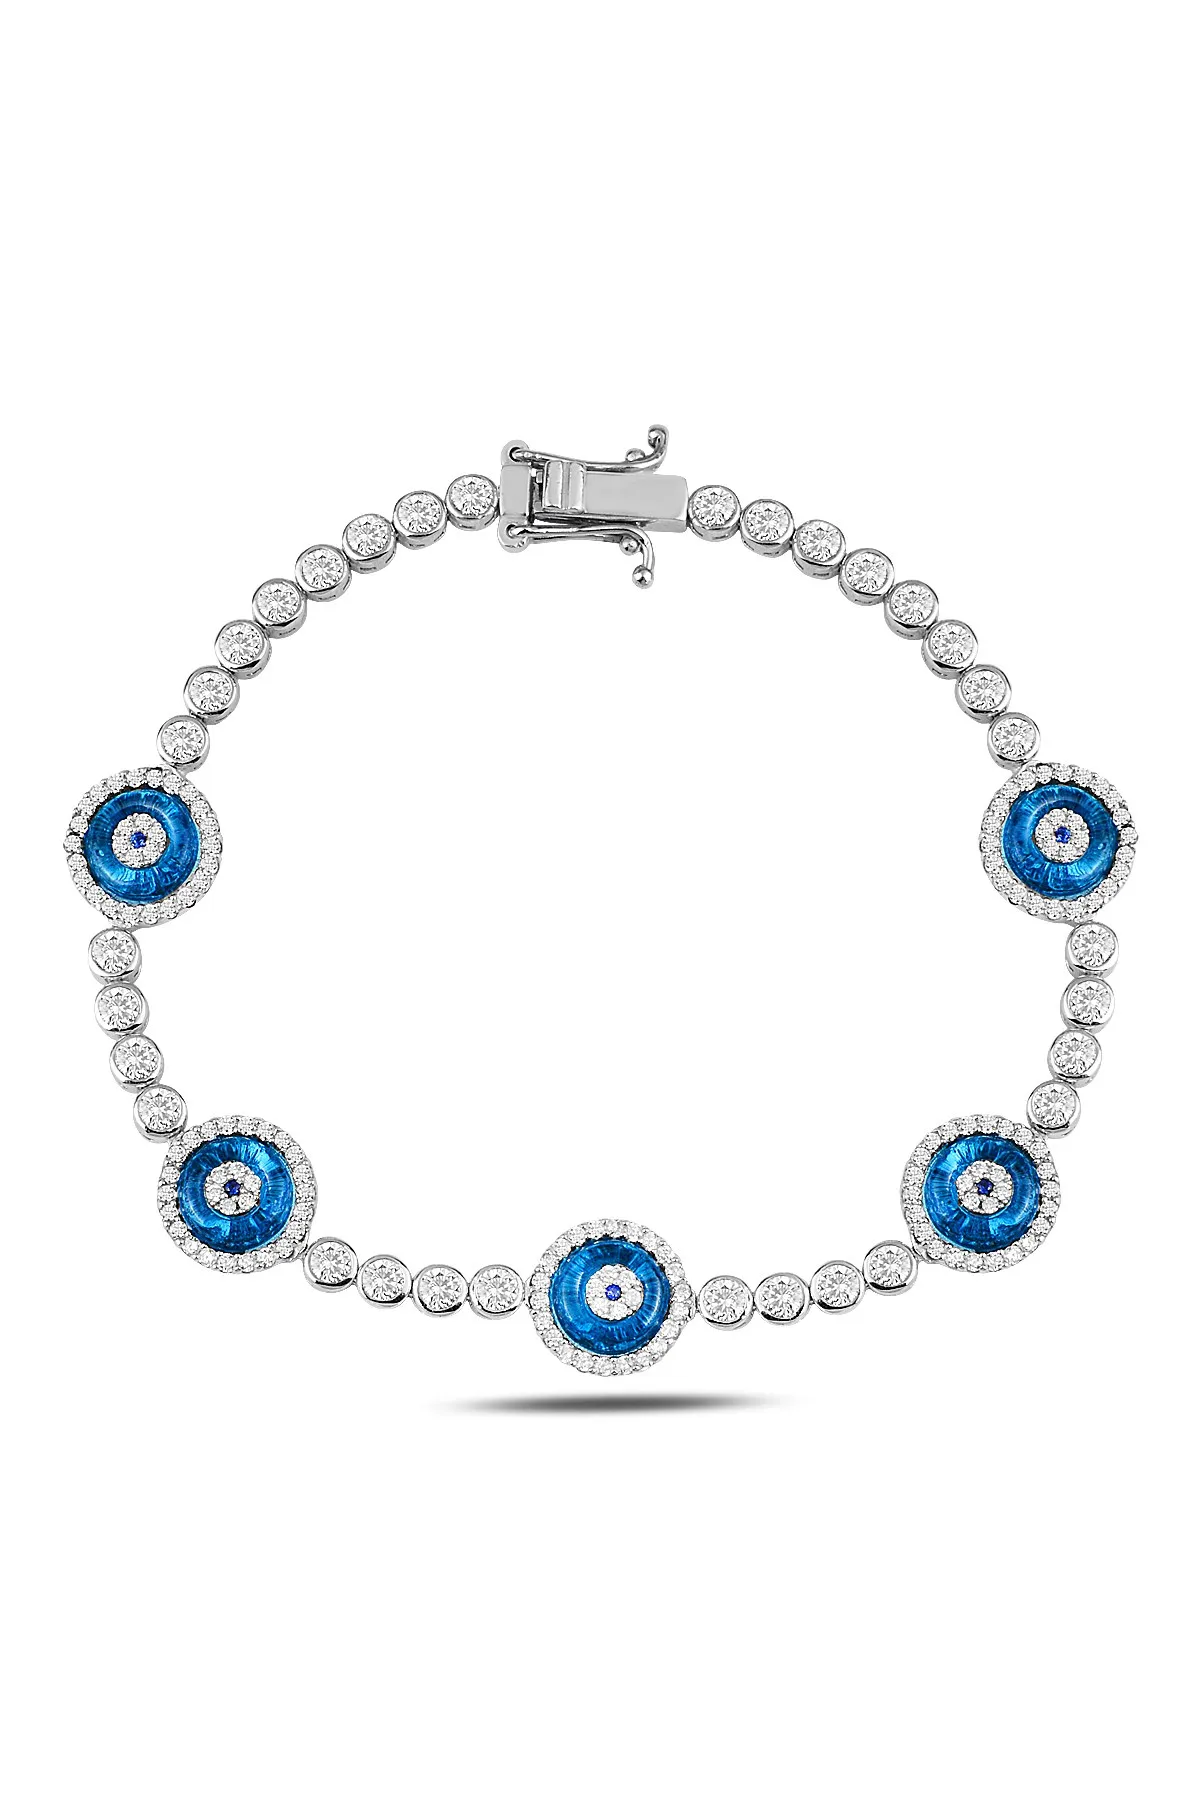 Tennis Bracelet , Evil Eye Bracelet, Tennis Bracelets, Turkish Evileye Bracelet , Evil Eye Silver Bracelet